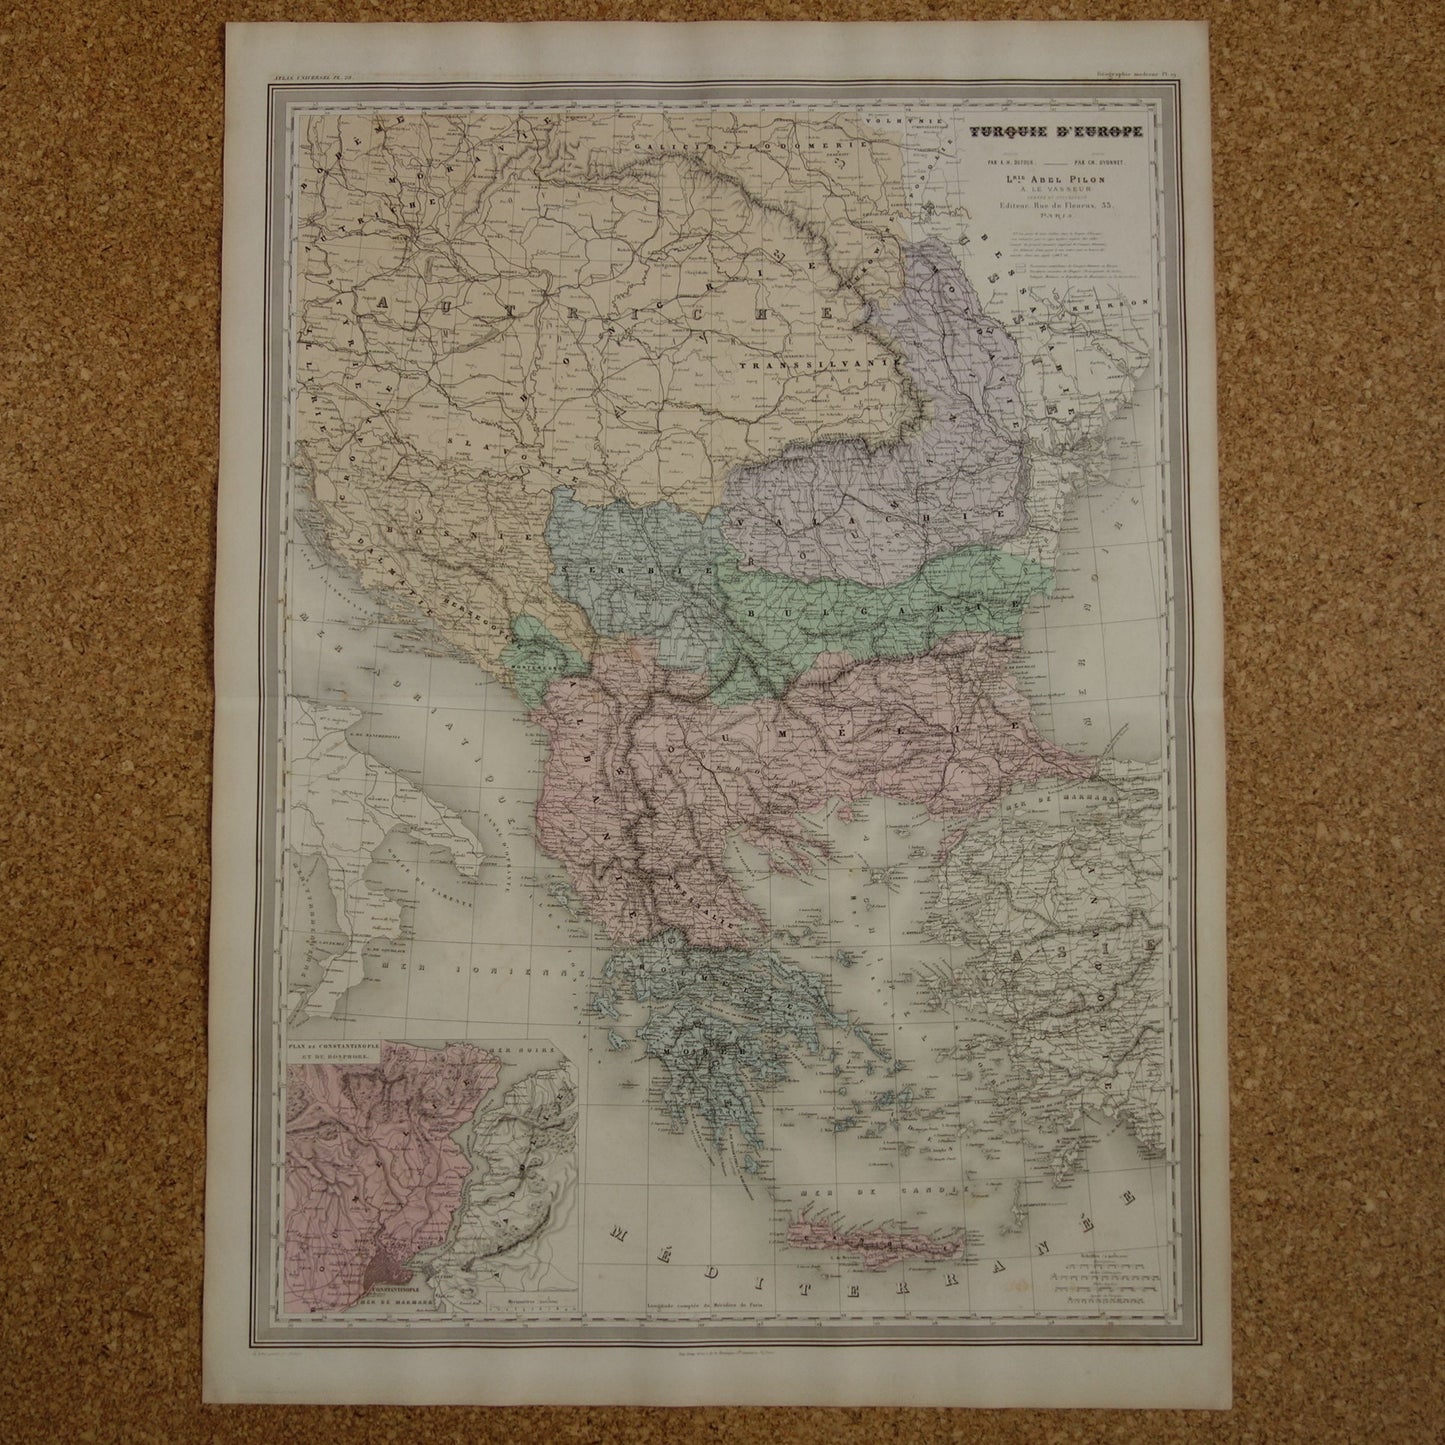 BALKAN antieke kaart van Griekenland Turkse Rijk uit 1880 - Grote oude kaart van Roemenië Bulgarije Servië Bosnië Montenegro